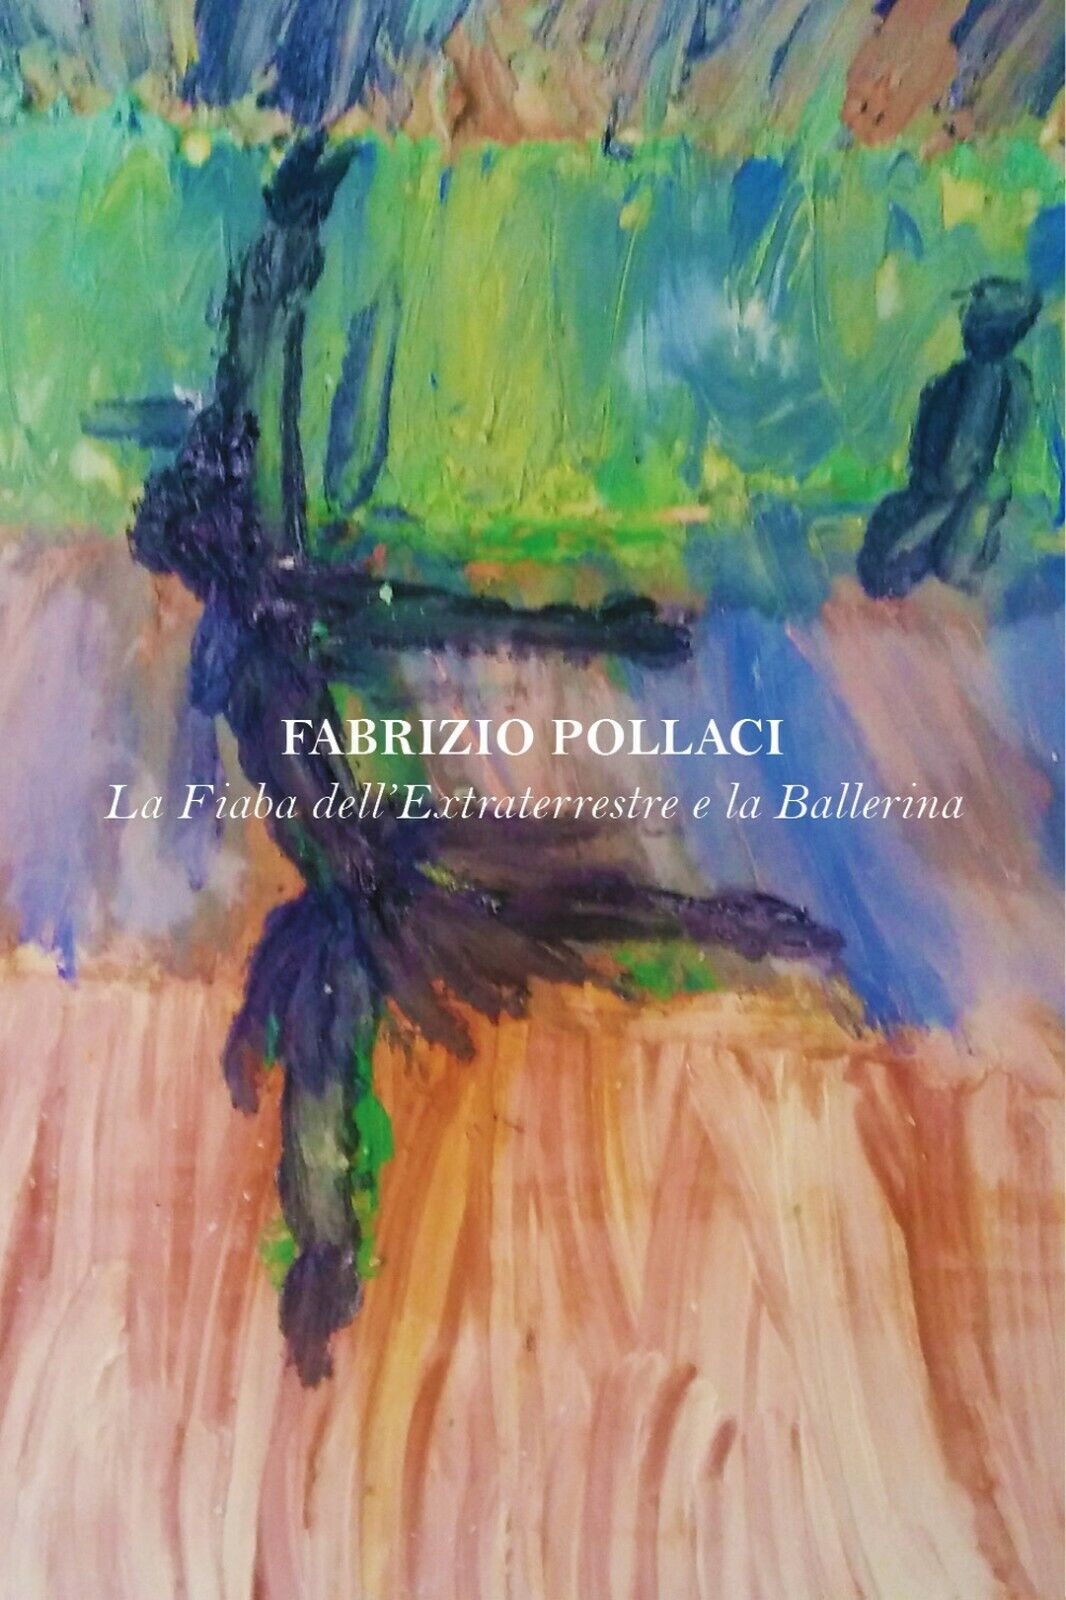 La Fiaba delL'Extraterrestre e la Ballerina, Fabrizio Pollaci,  2017,  Youcanpr.